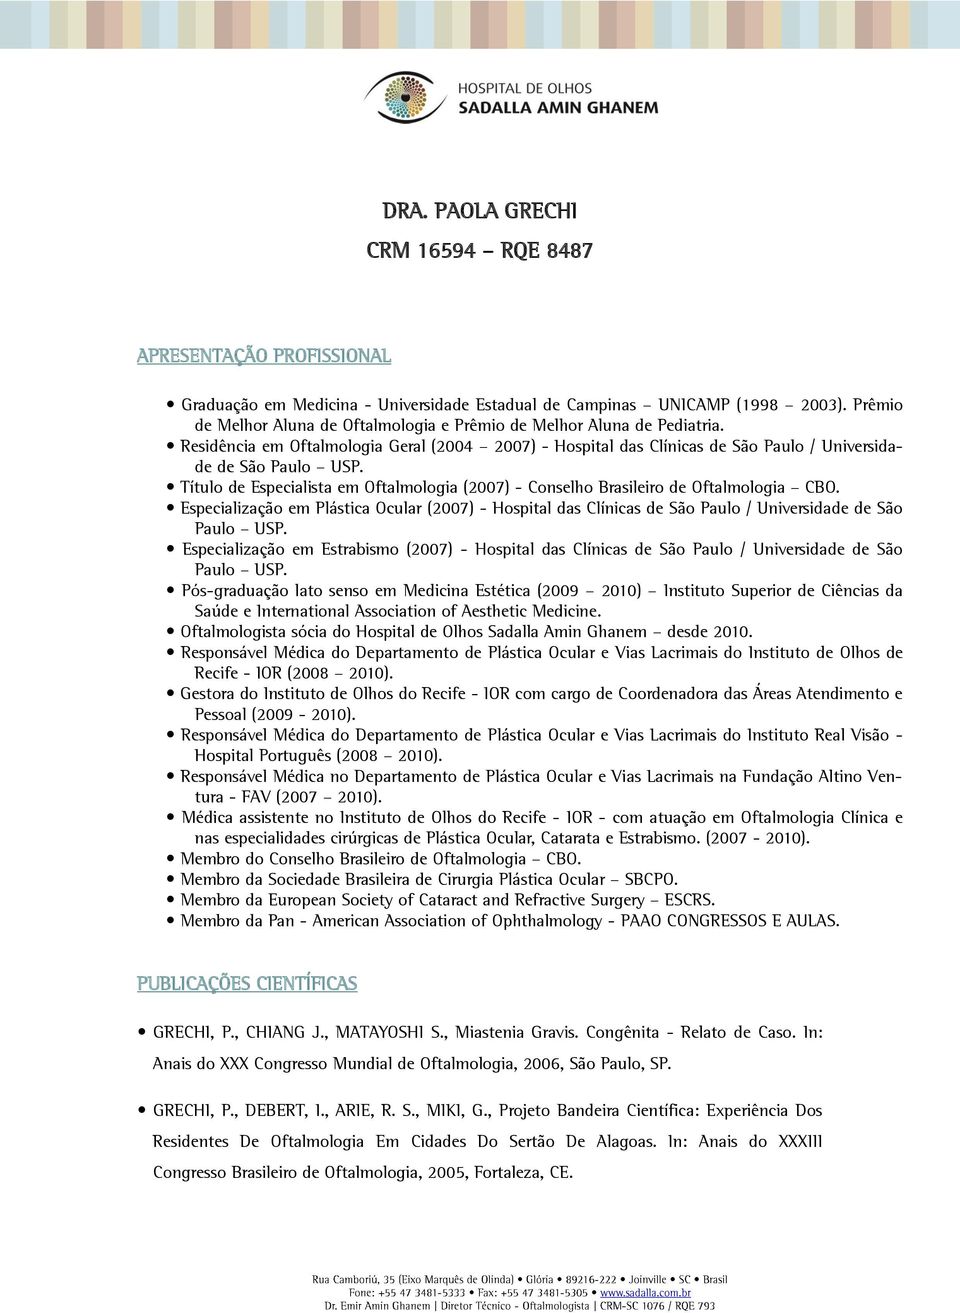 Título de Especialista em Oftalmologia (2007) - Conselho Brasileiro de Oftalmologia CBO. Especialização em Plástica Ocular (2007) - Hospital das Clínicas de São Paulo / Universidade de São Paulo USP.